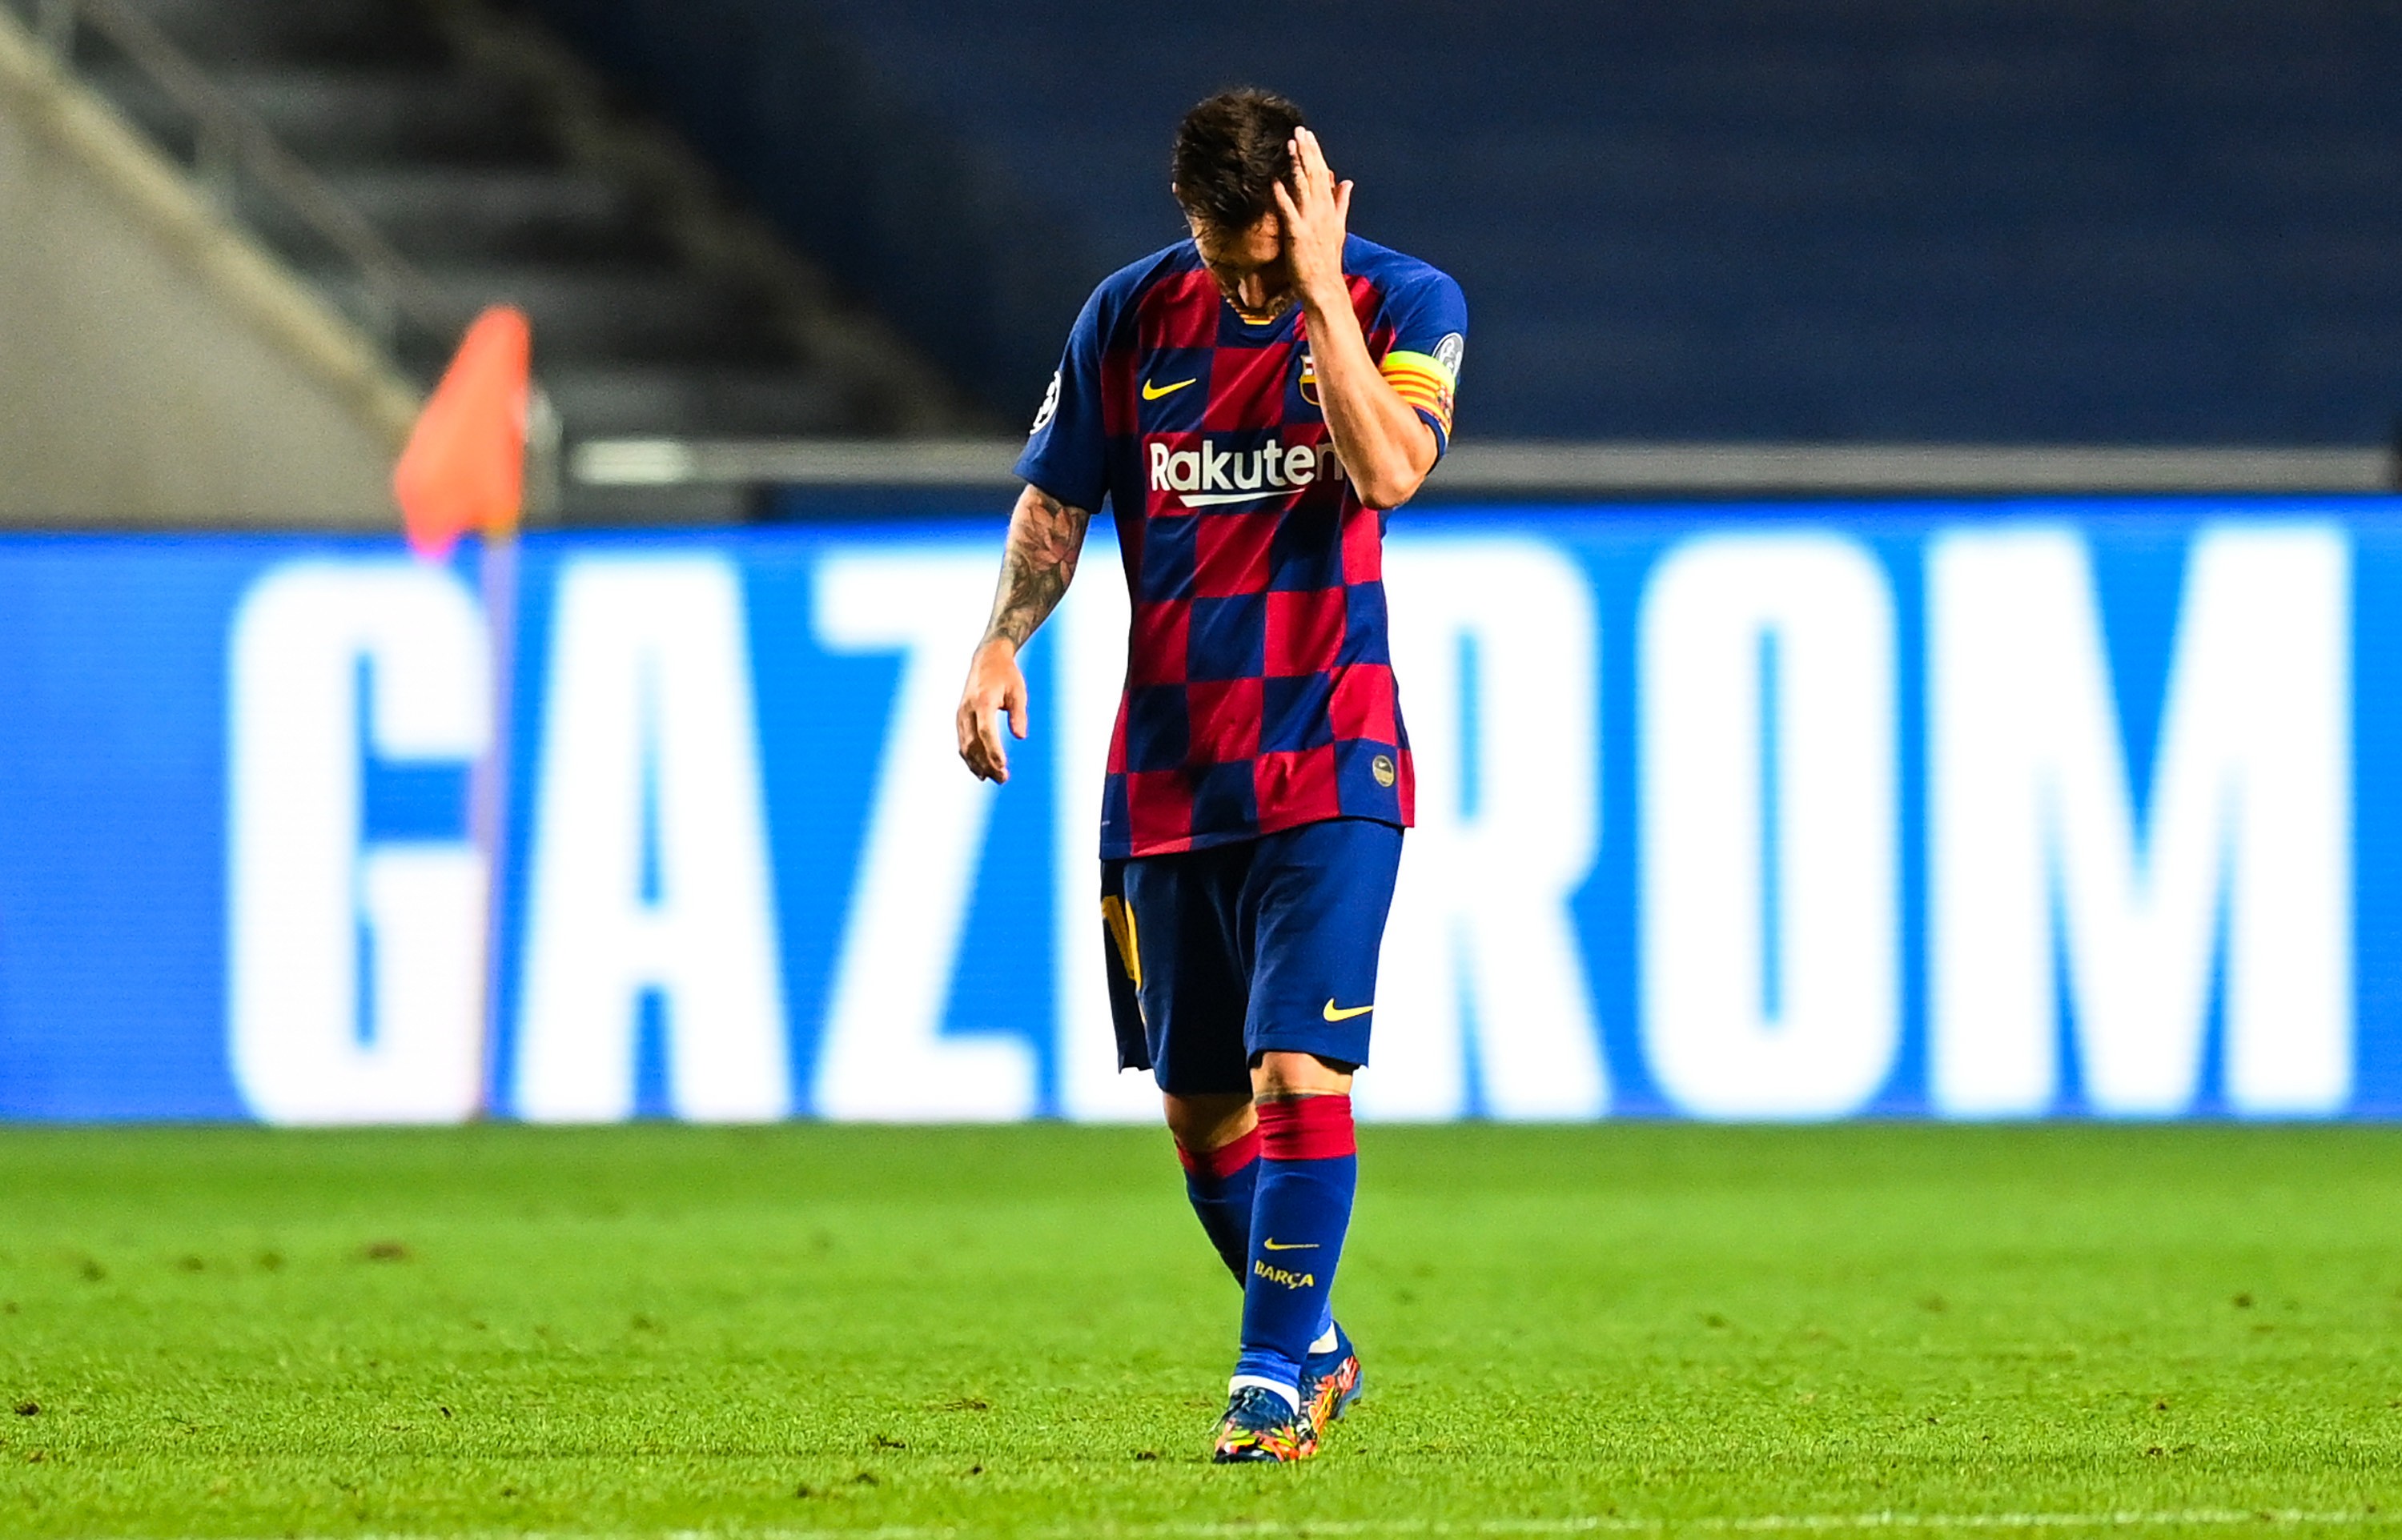 Le club communique sur la blessure de Leo Messi 